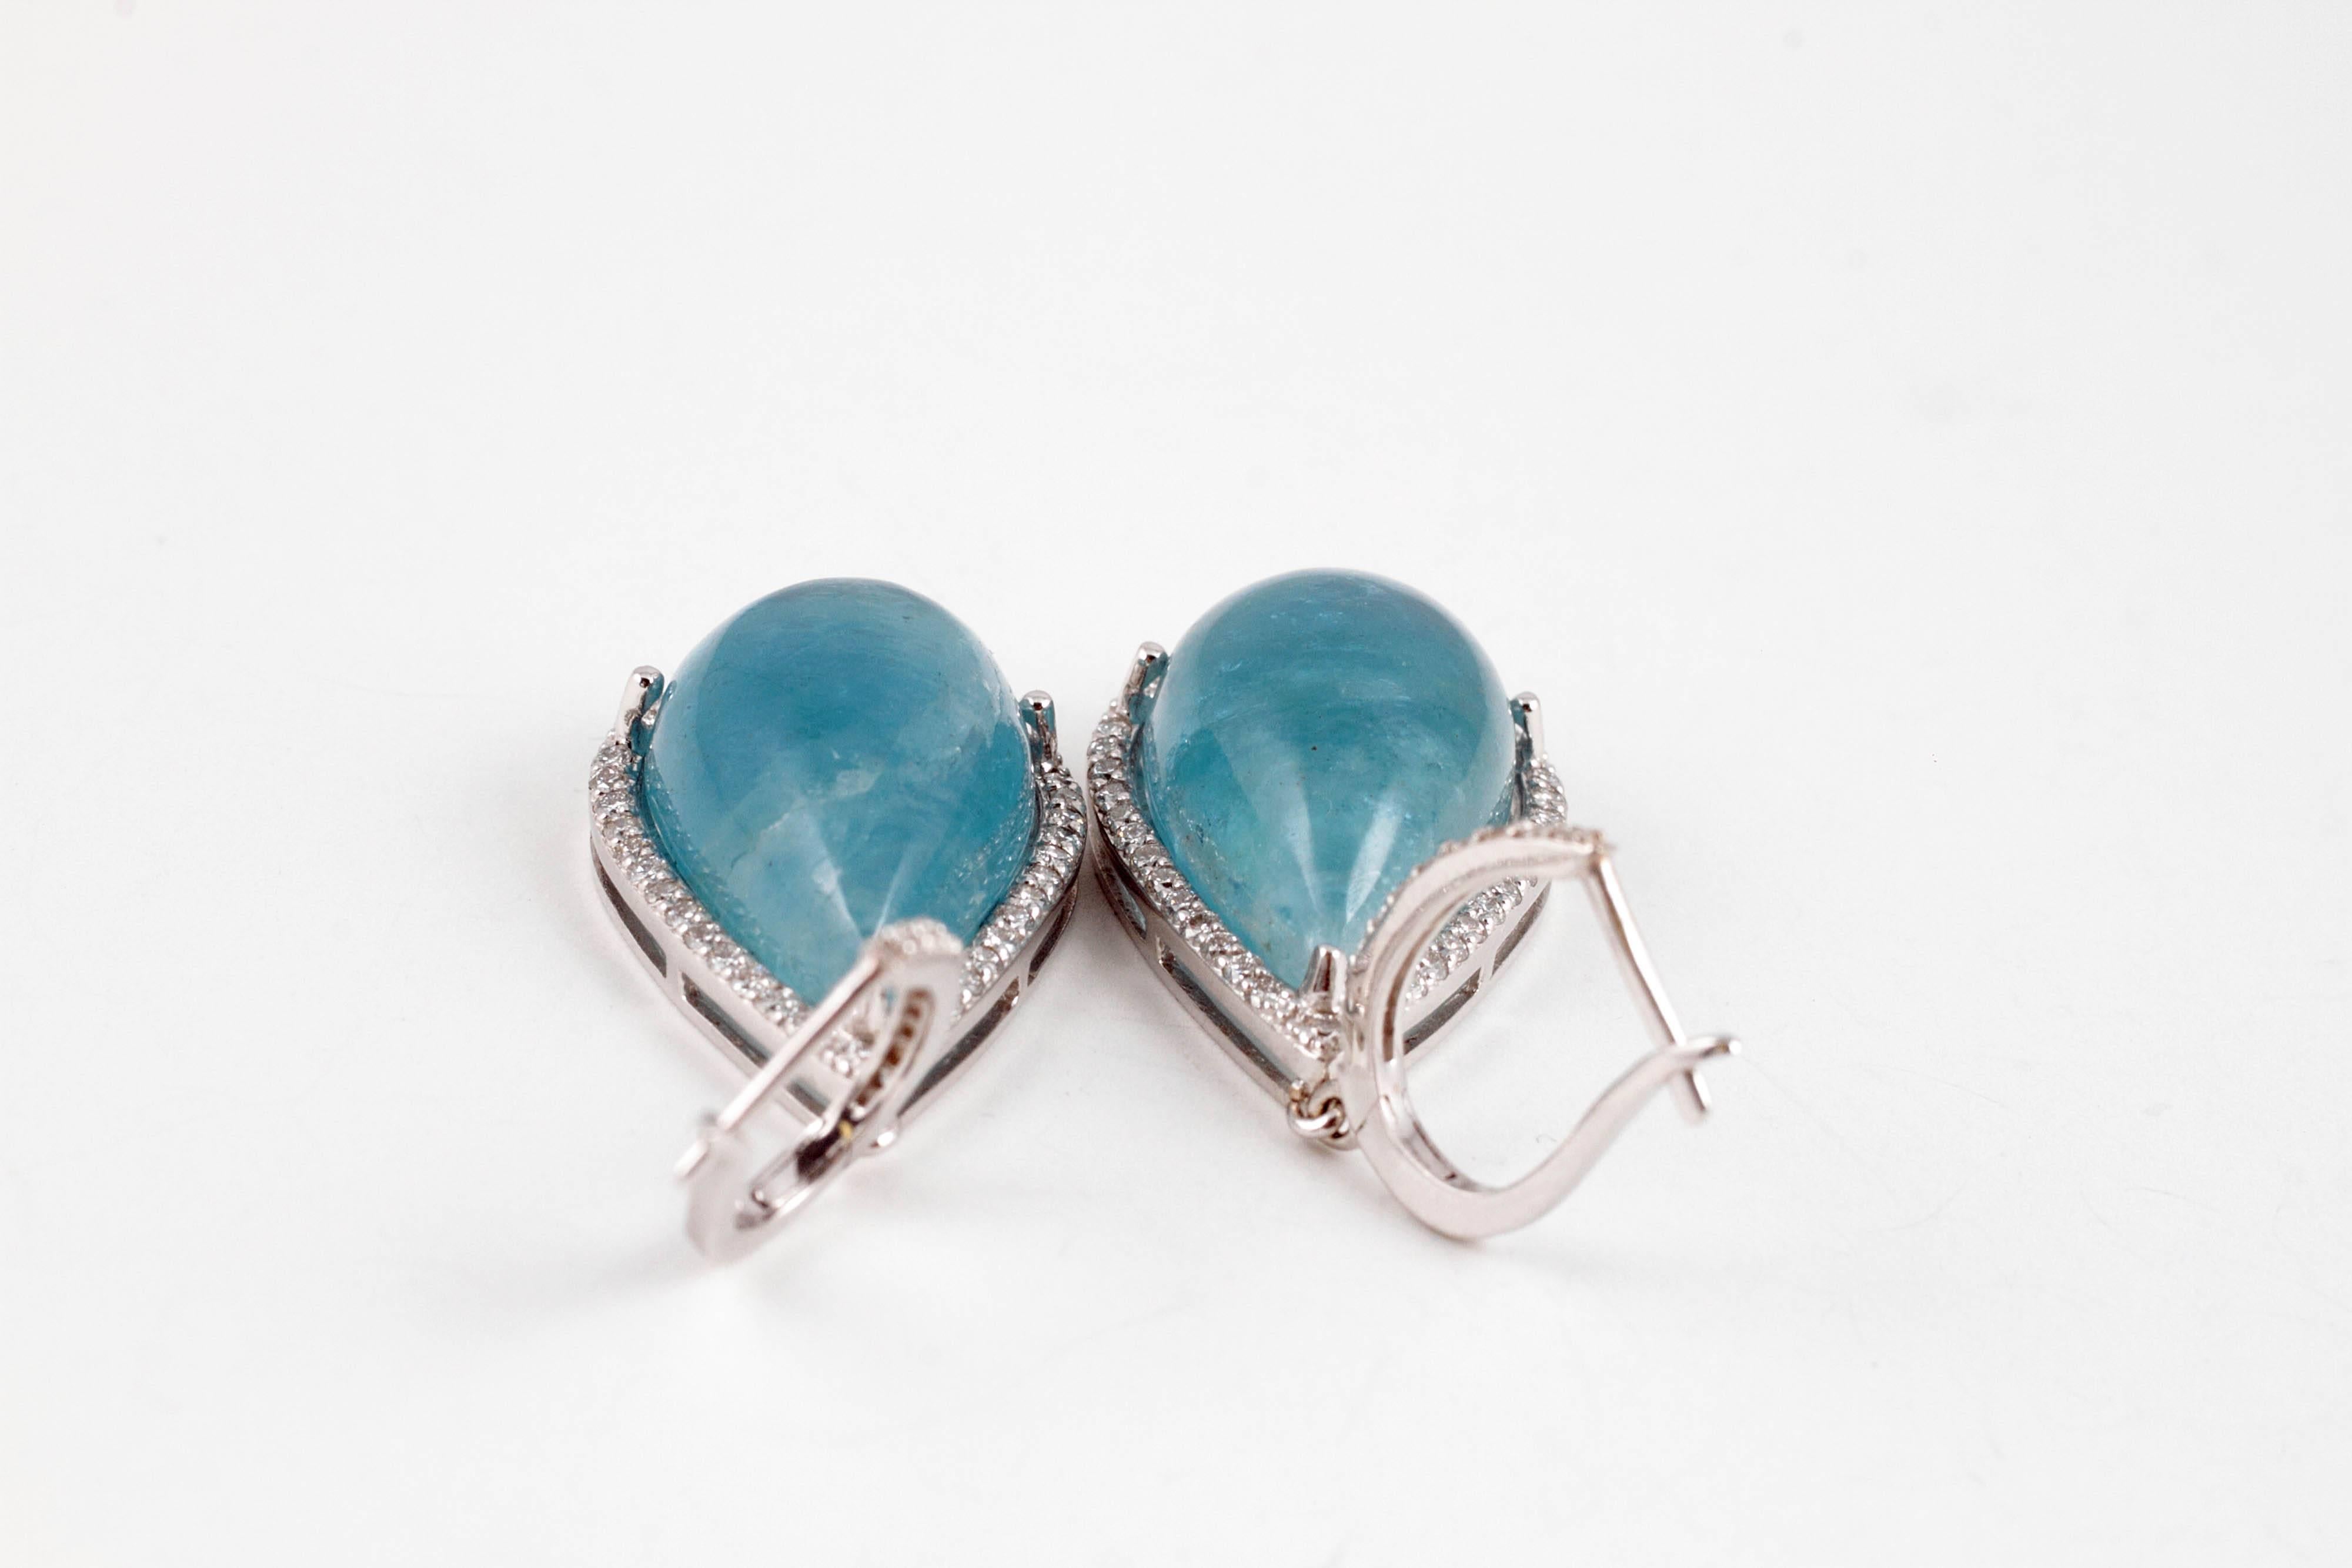 Cabochon-Cut 30.00 Carat Aquamarine Diamond Dangle Earrings 4